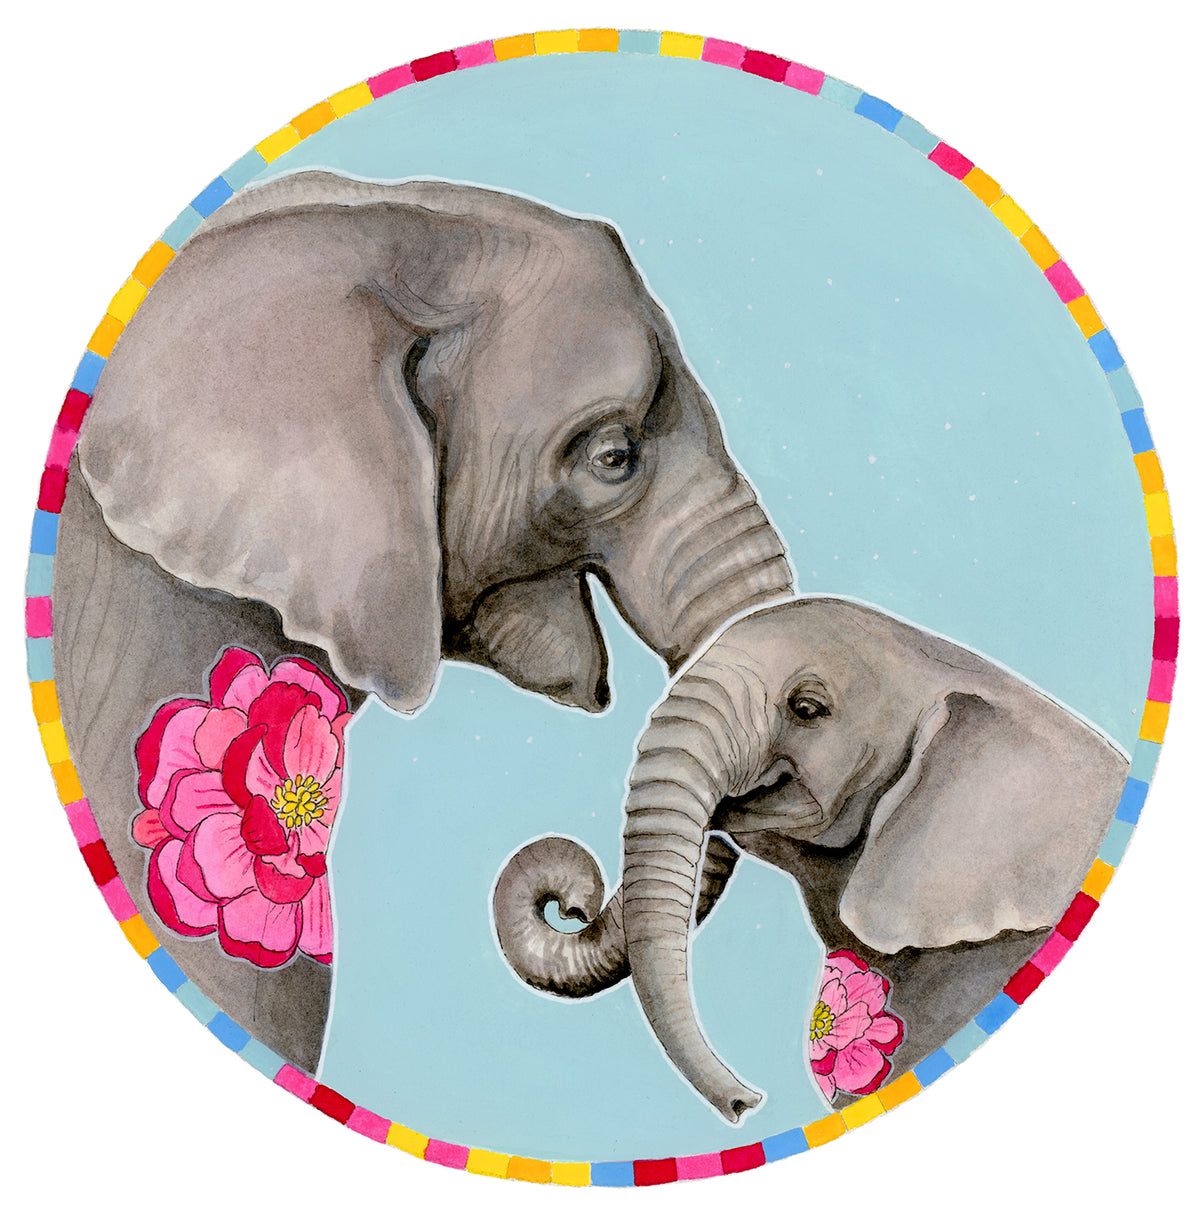 Elephant Mama Print